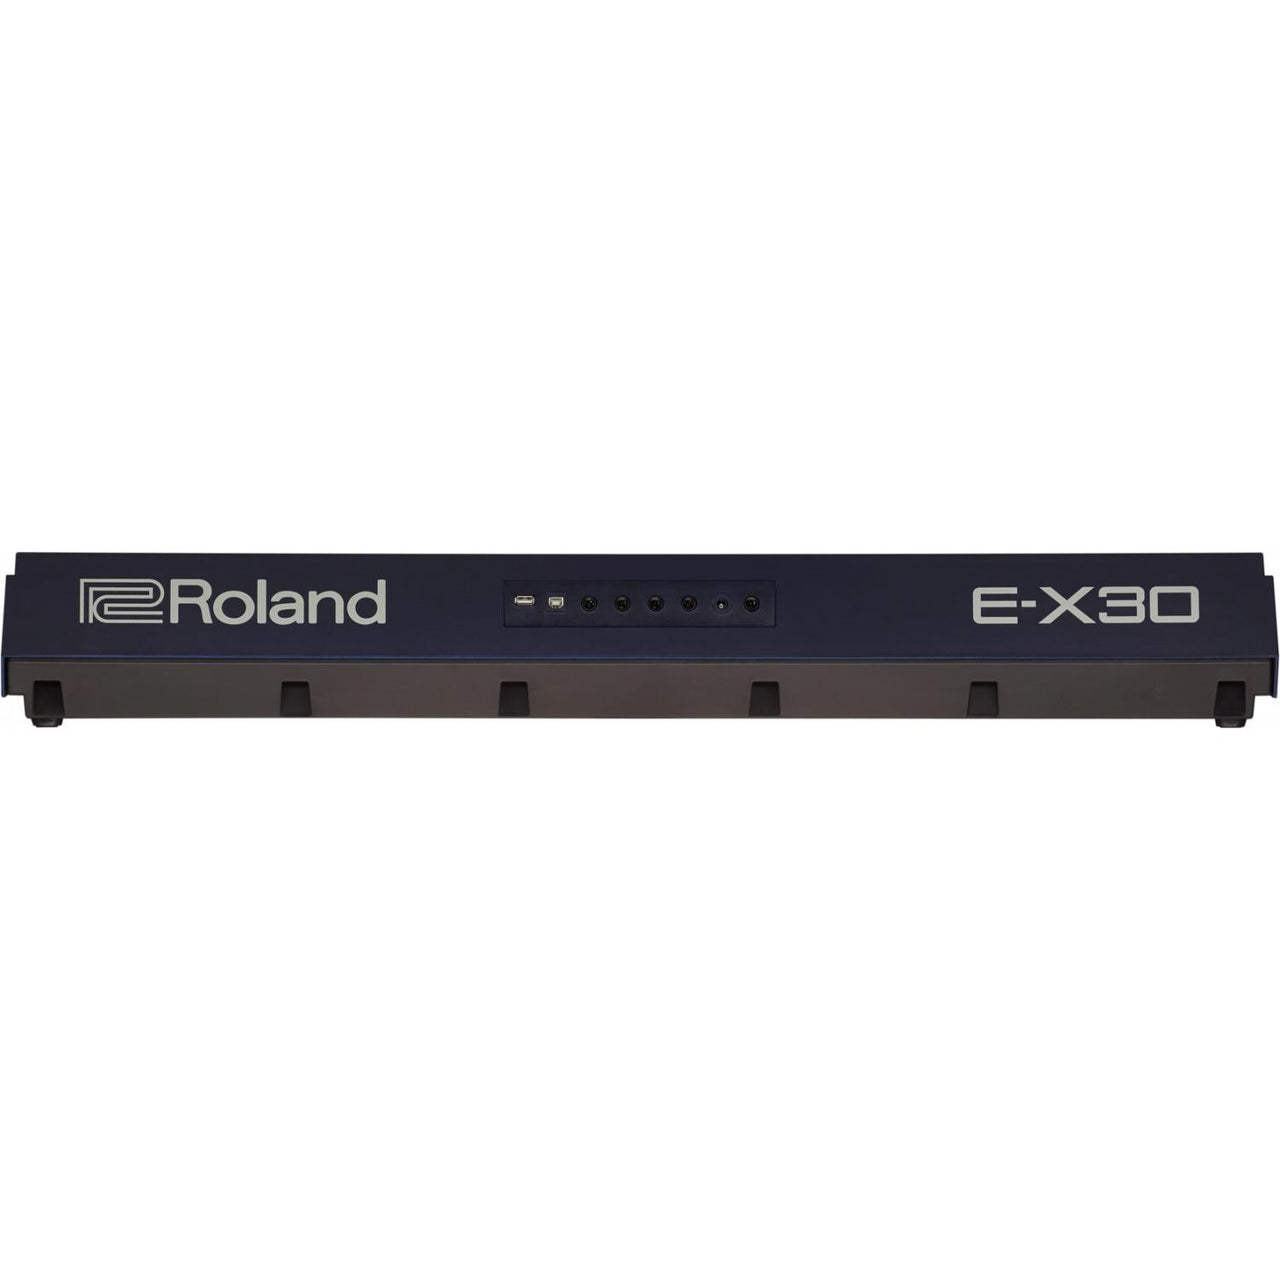 Teclado Roland Ex30 Arreglista Arranger Teclado Electronico 61 Teclas